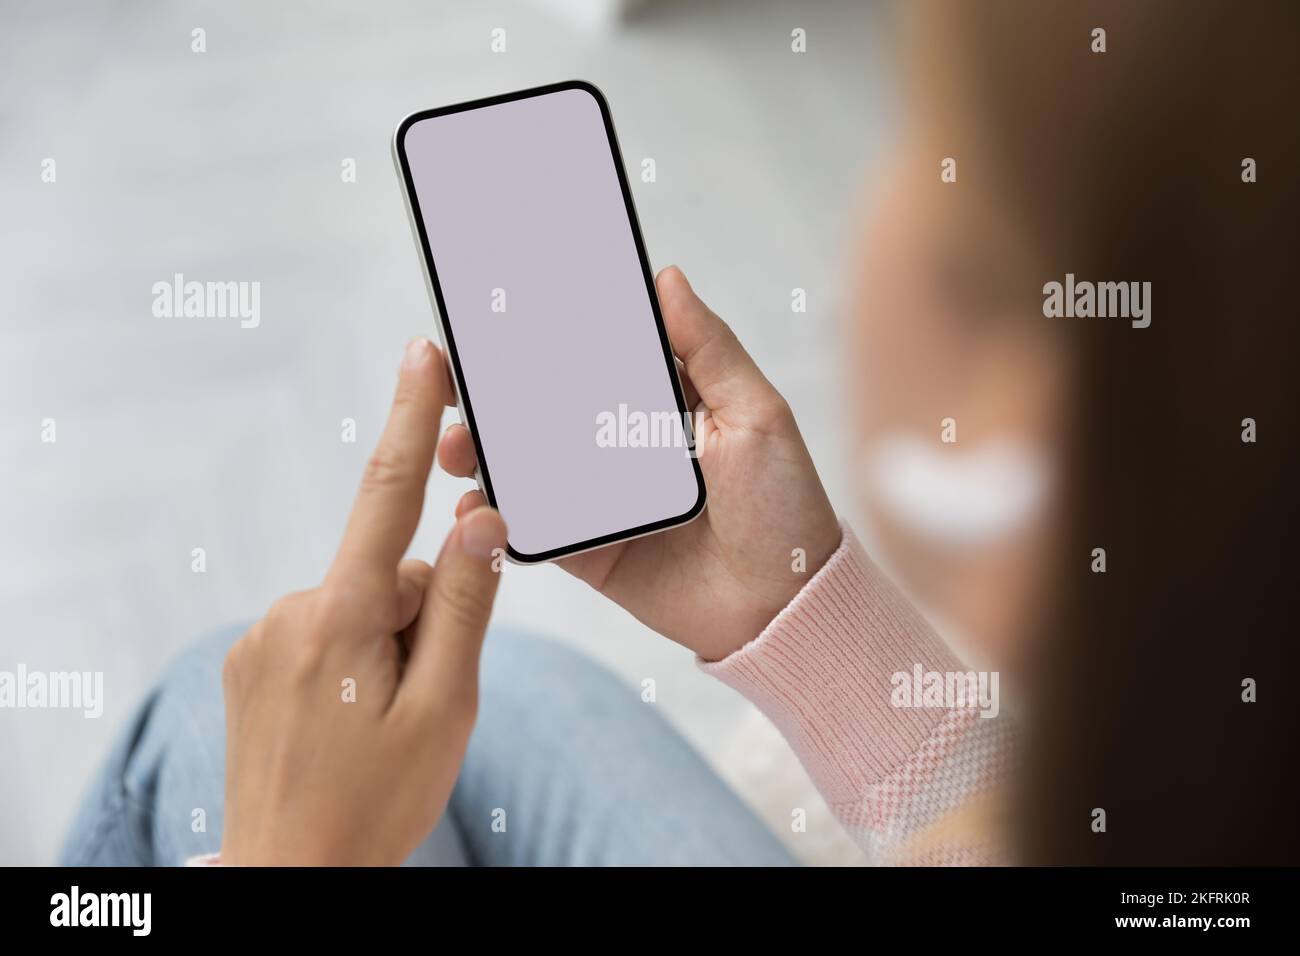 Femme tenant un smartphone avec un écran maquette blanc, gros plan Banque D'Images